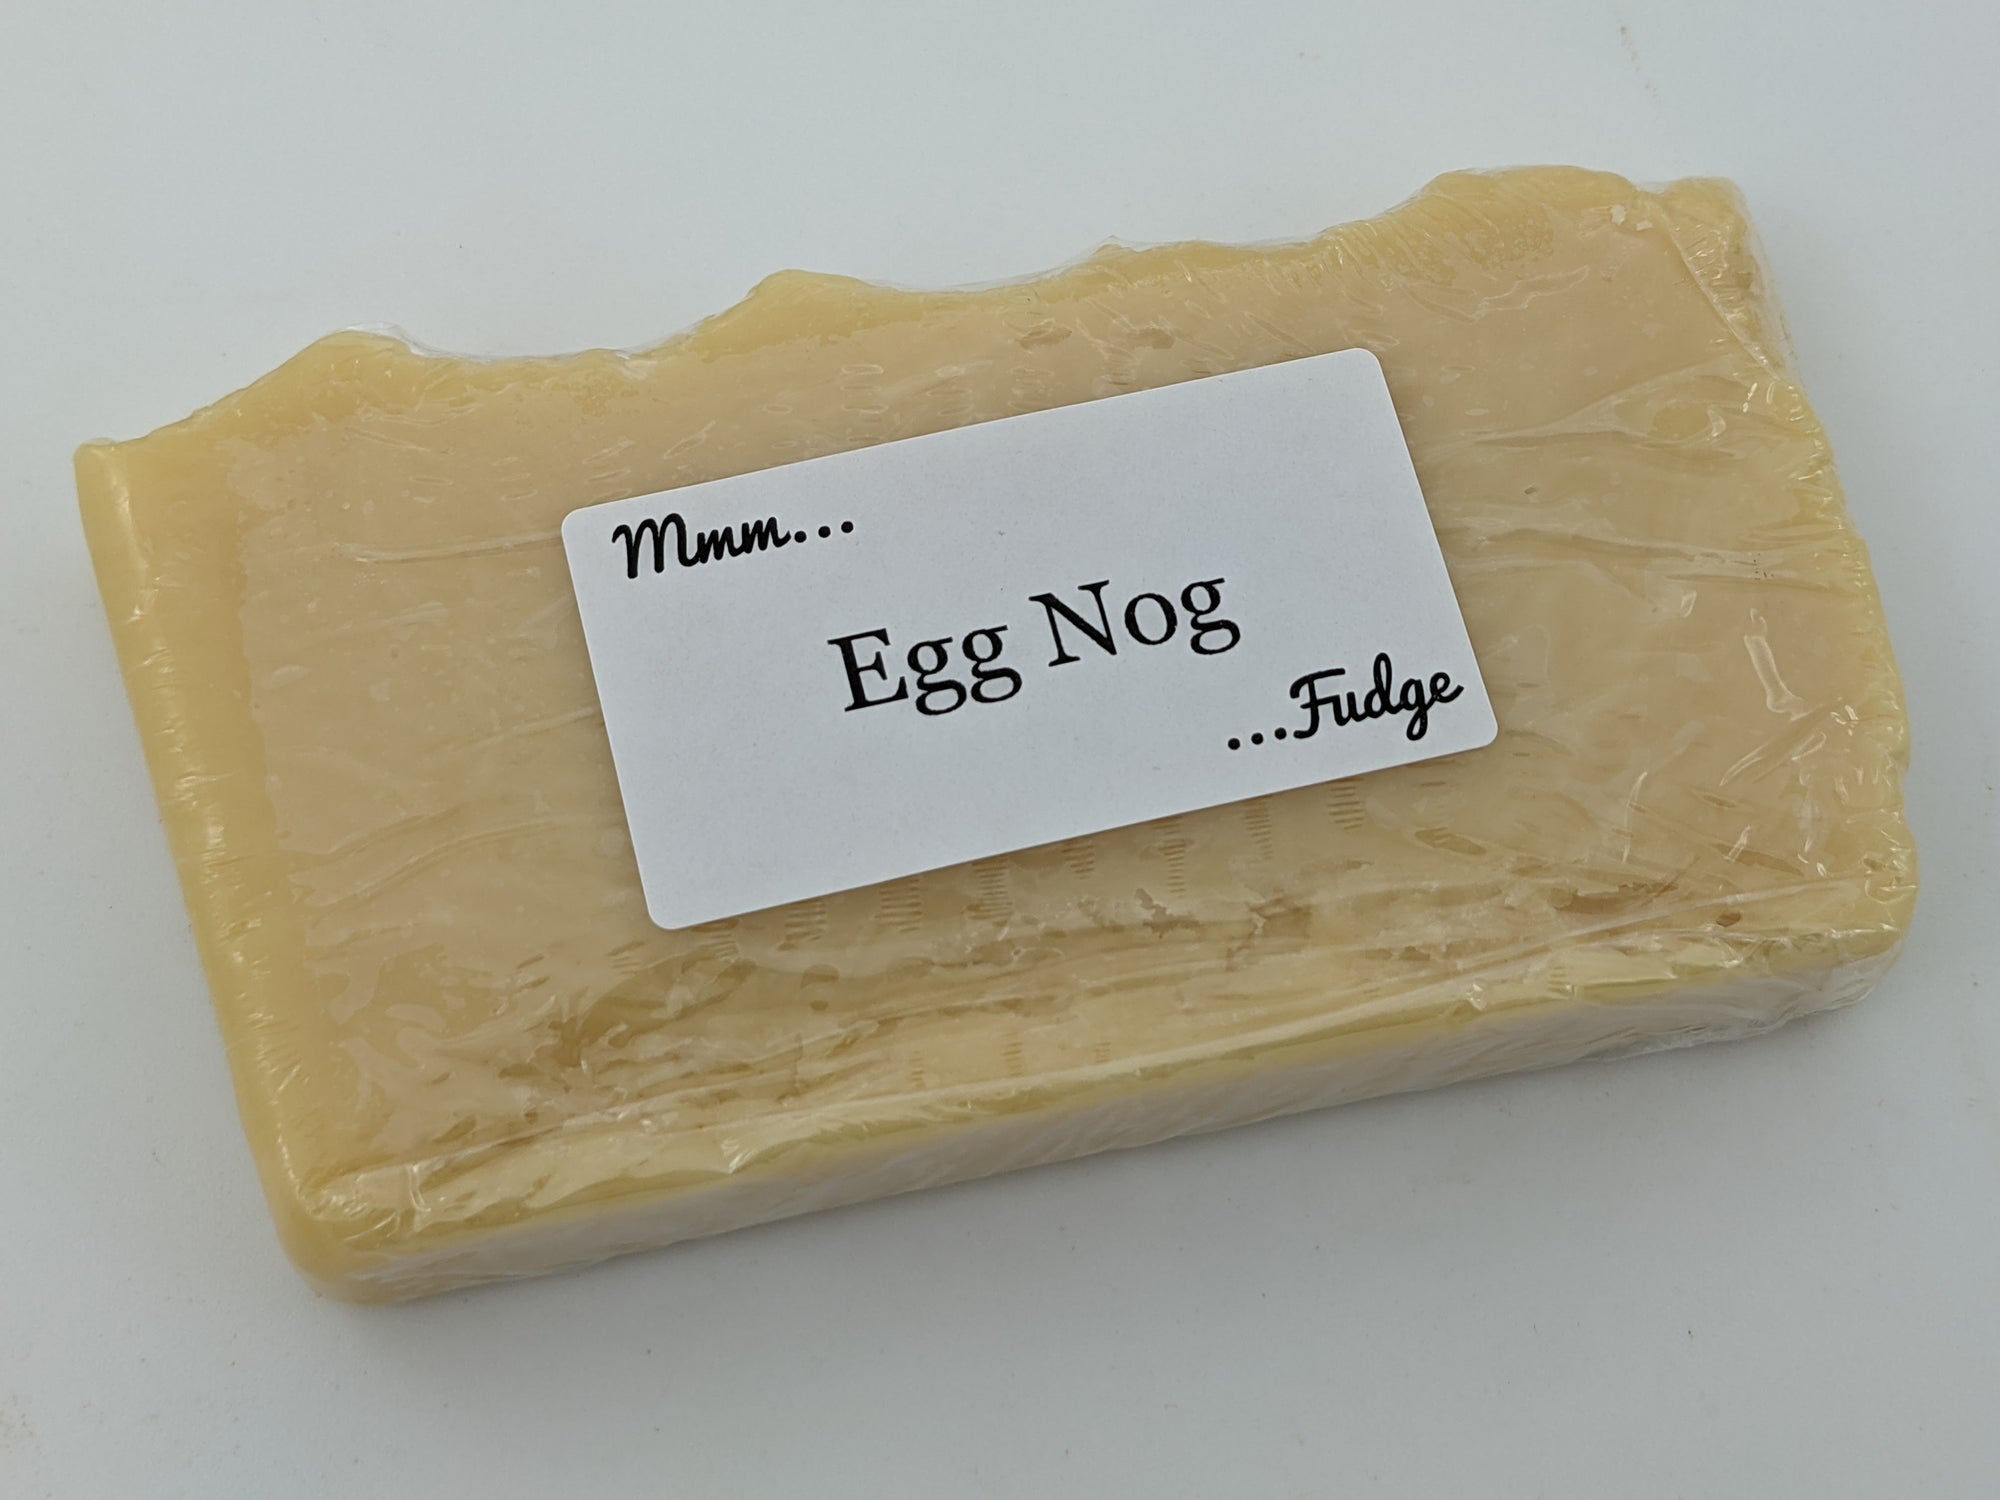 Fudge: Egg Nog